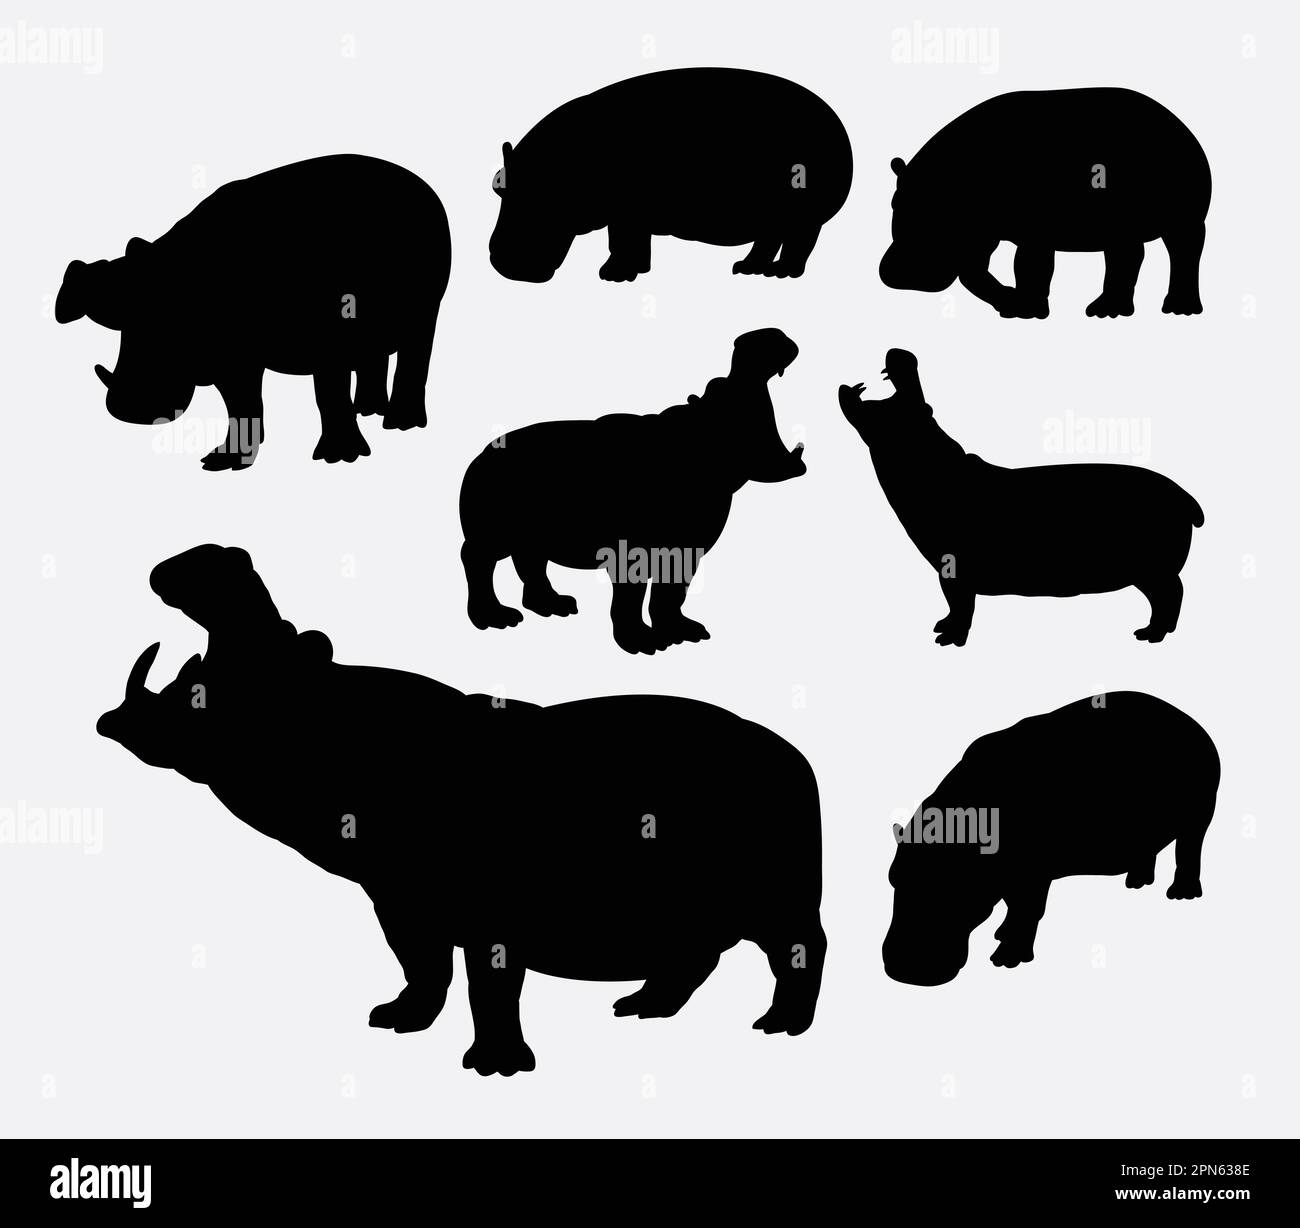 Silhouettes animaux sauvages hippopotames. Bon usage pour symbole, icône web, logo, mascotte, ou tout design que vous voulez. Facile à utiliser. Illustration de Vecteur